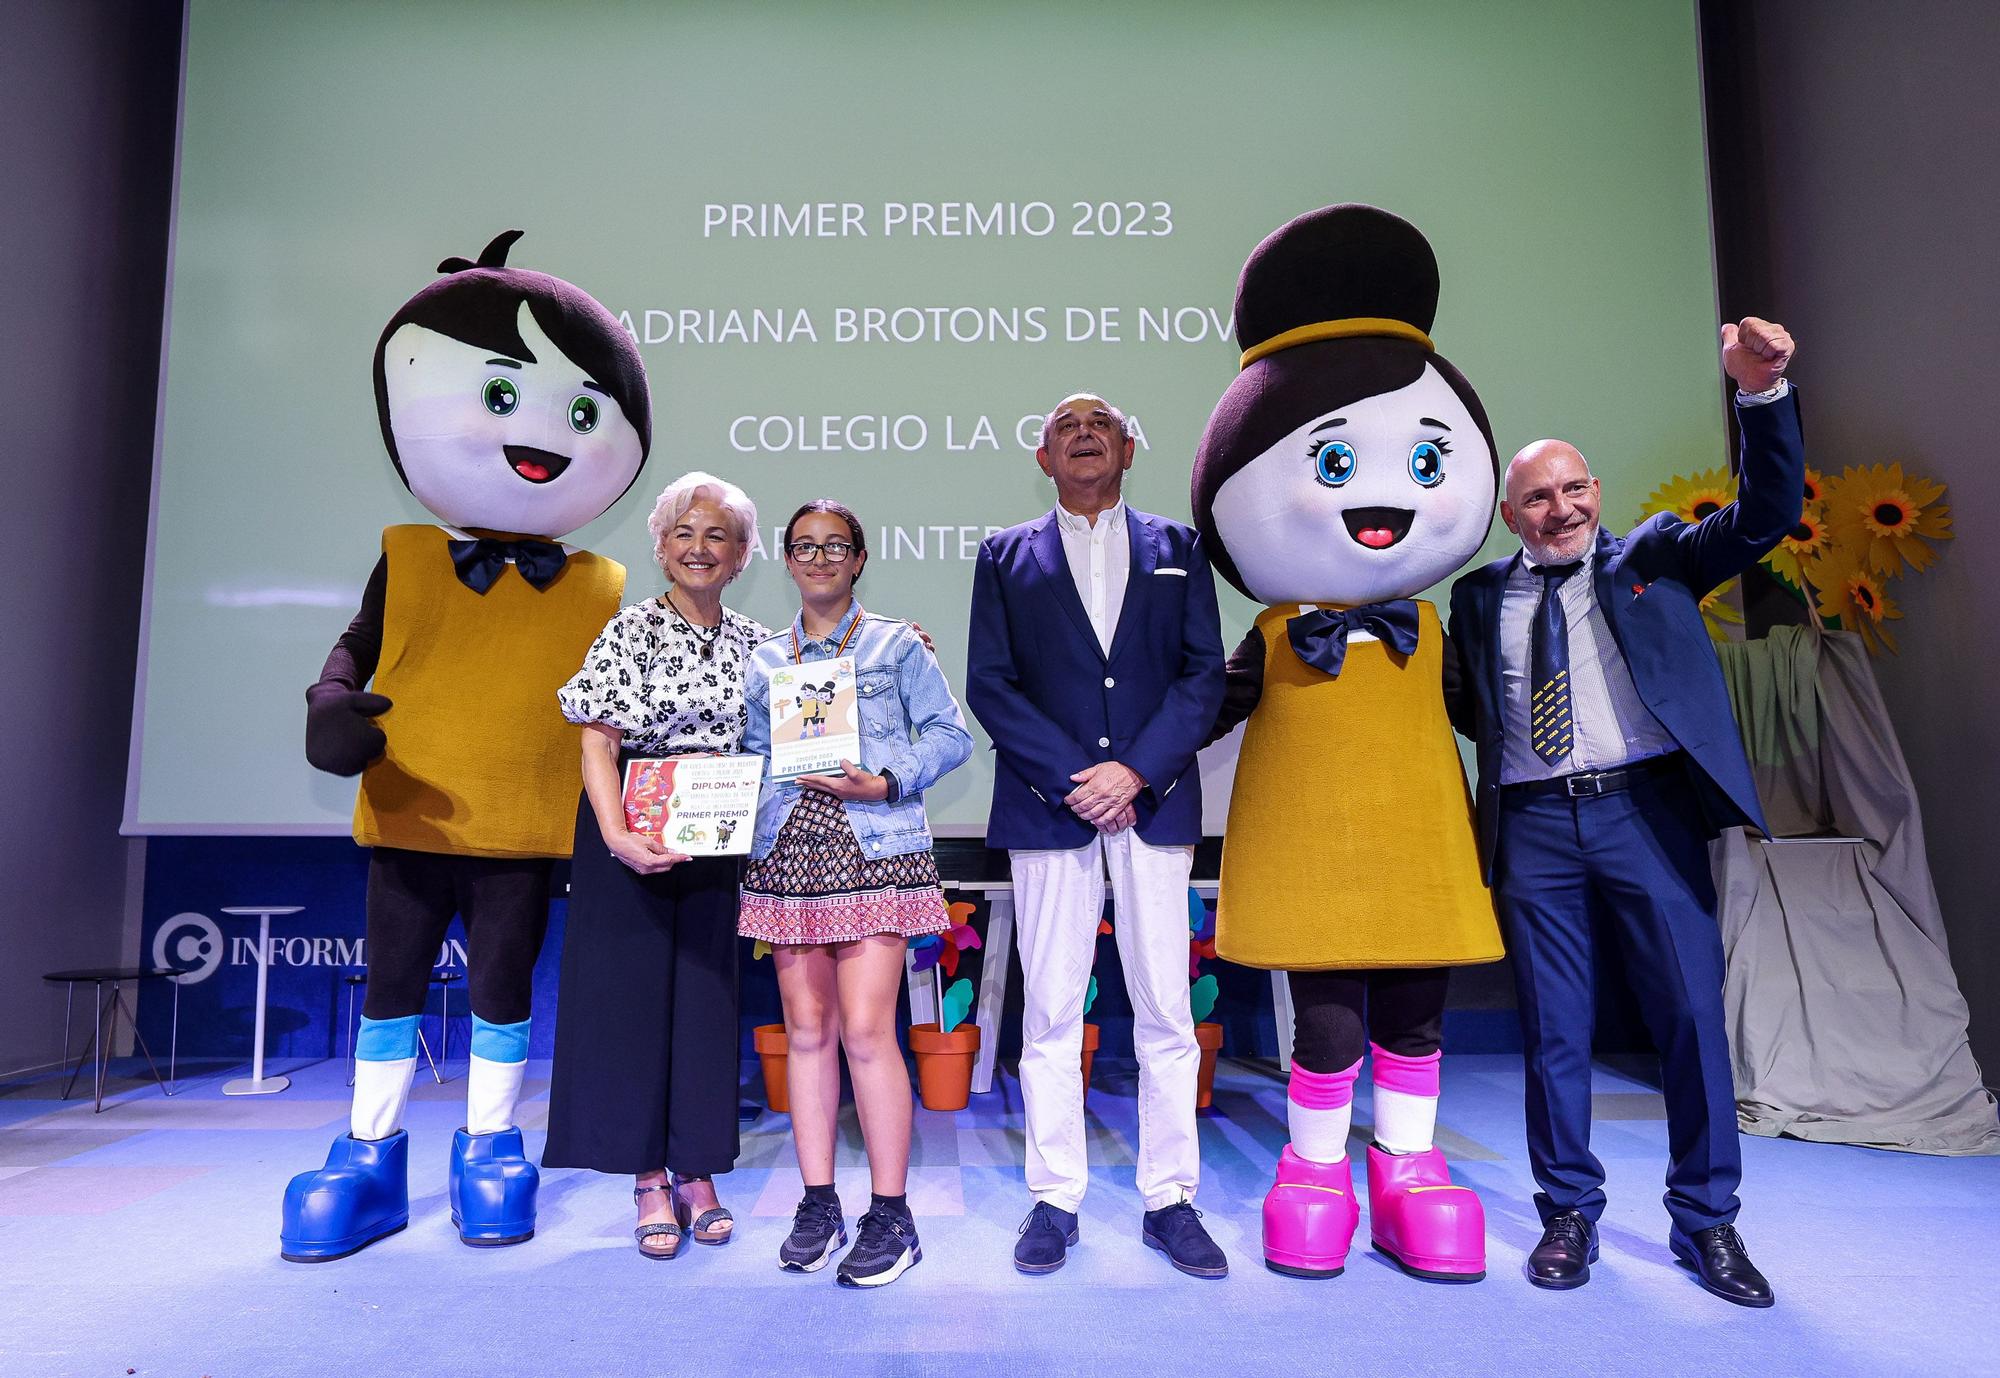 La ganadora del primer premio, Adriana Brotons de Nova, junto con los gerentes de Coes, Maribel y Maximiliano Botella.